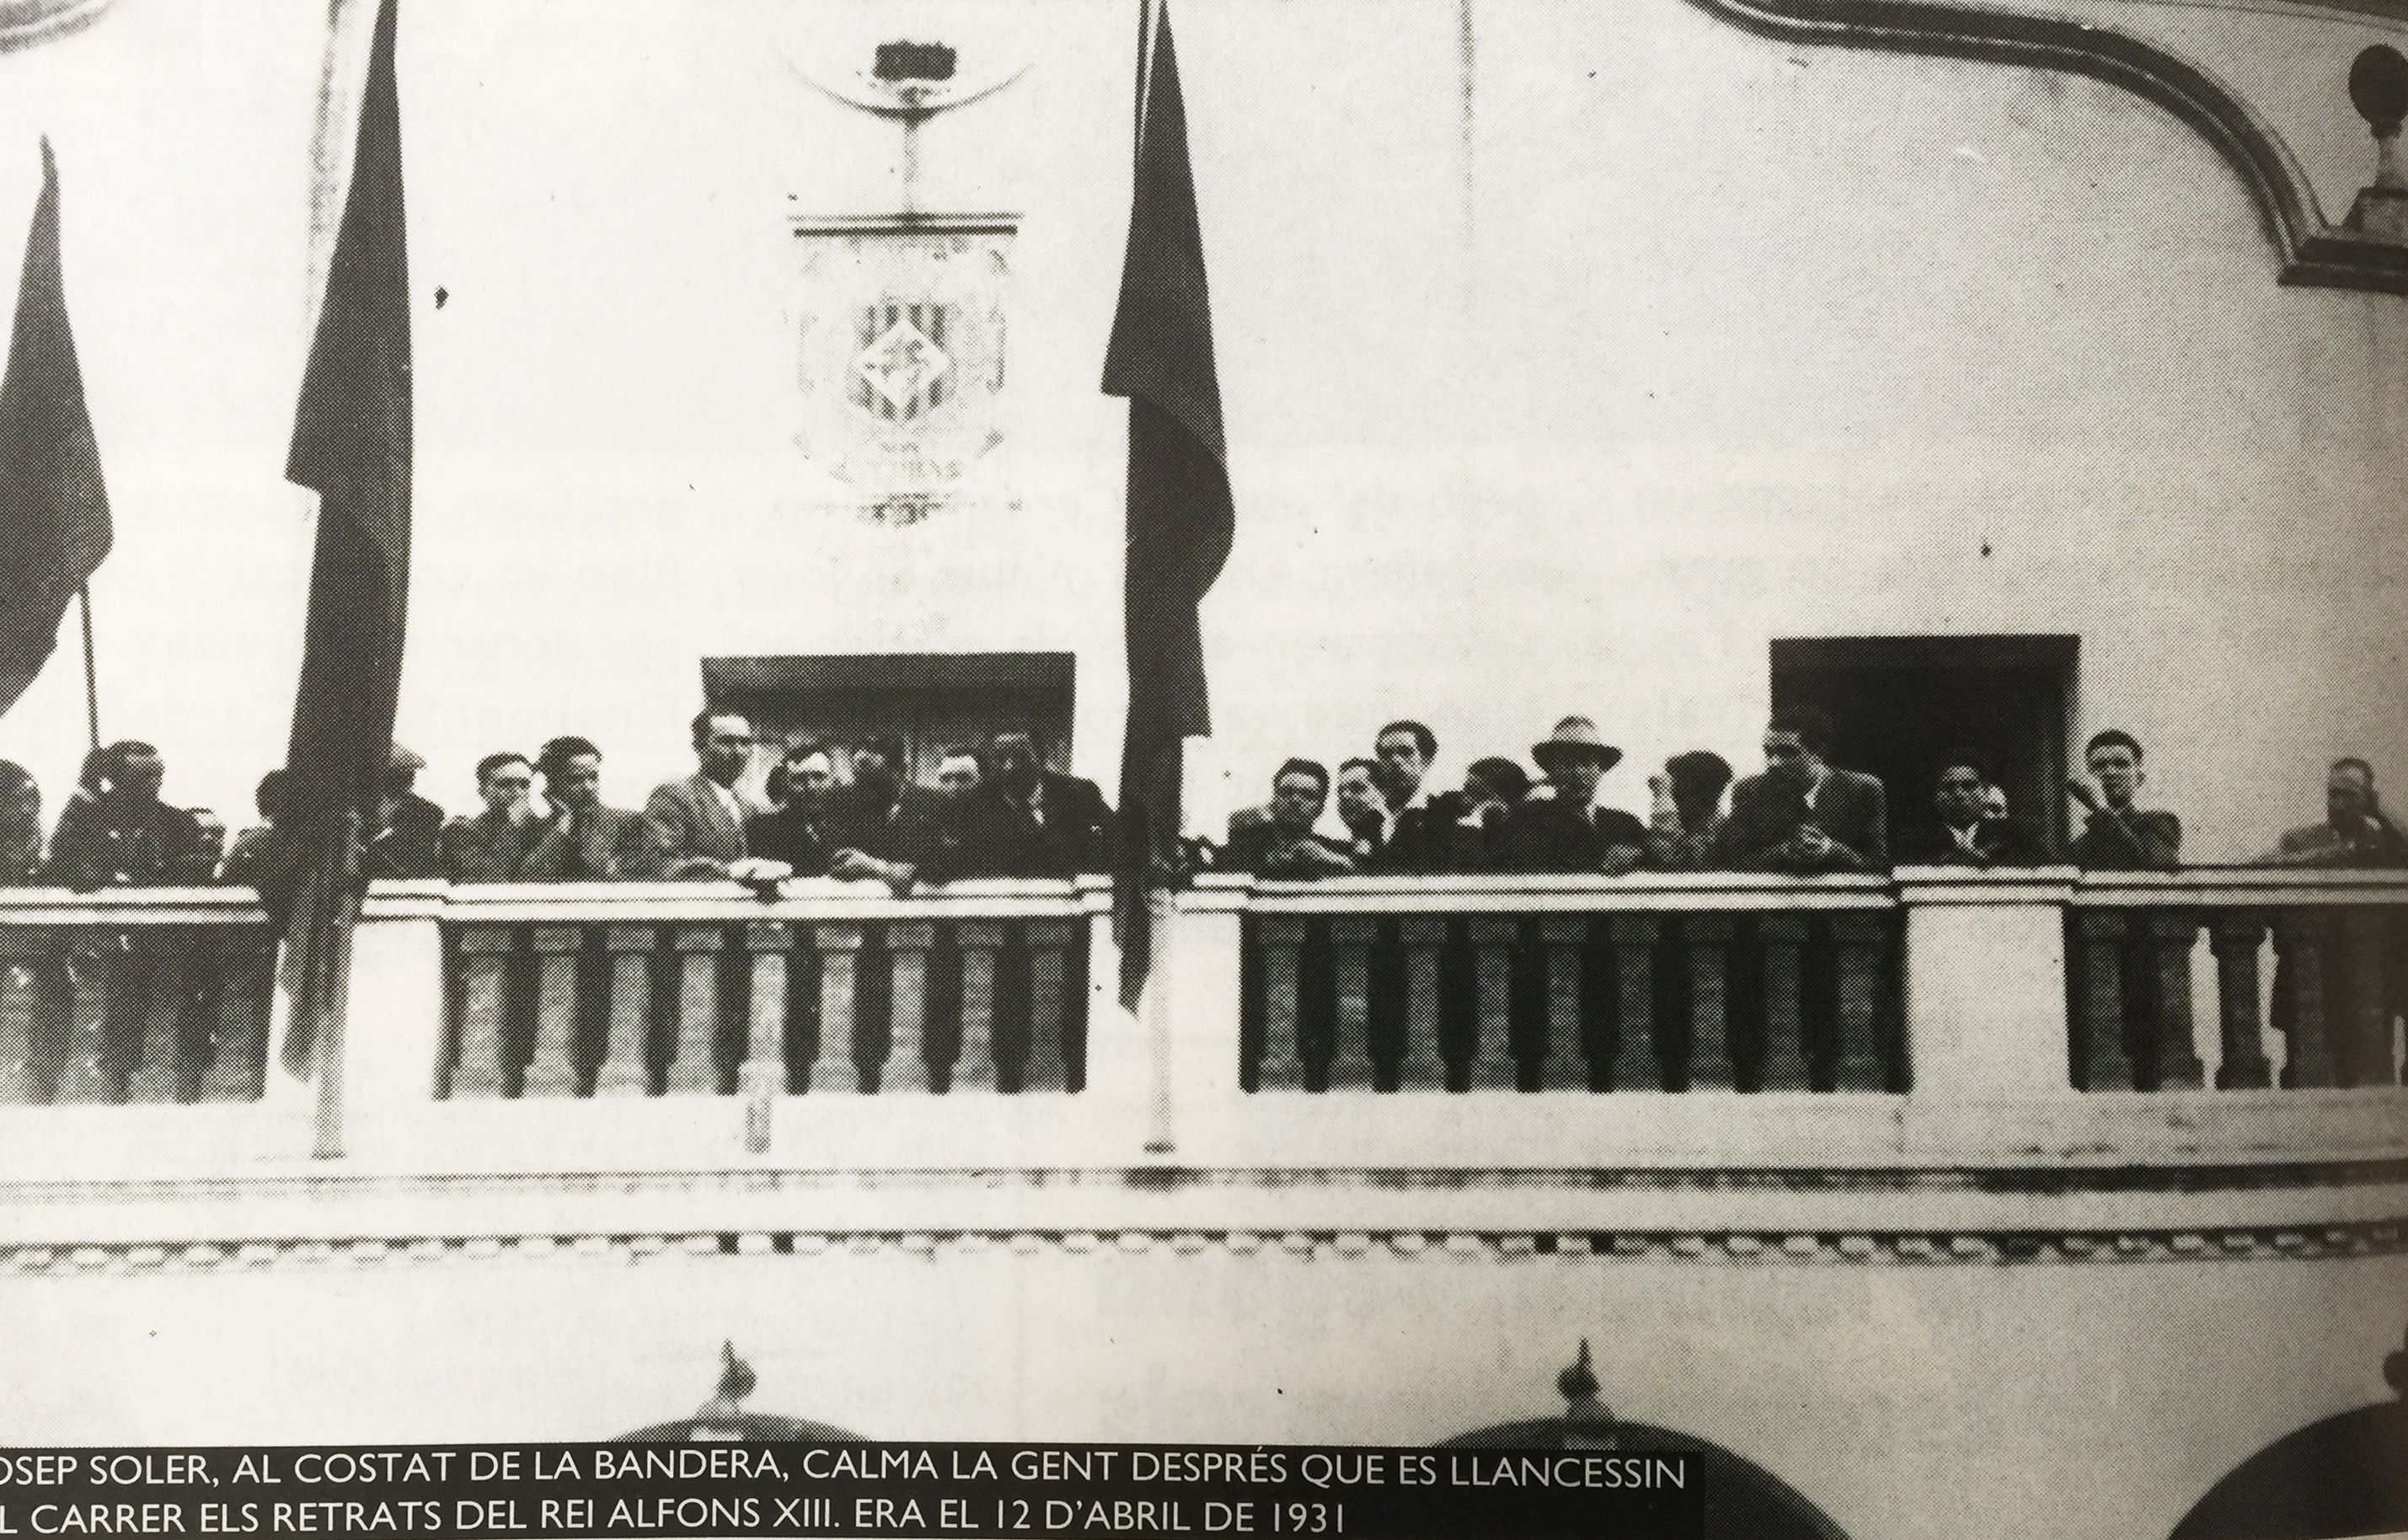 Representants polítics de la ciutat al balcó de l'Ajuntament l'any 1931 després de la proclamació de la República Catalana per part de Francesc Macià. FOTO: Arxiu del TOT 